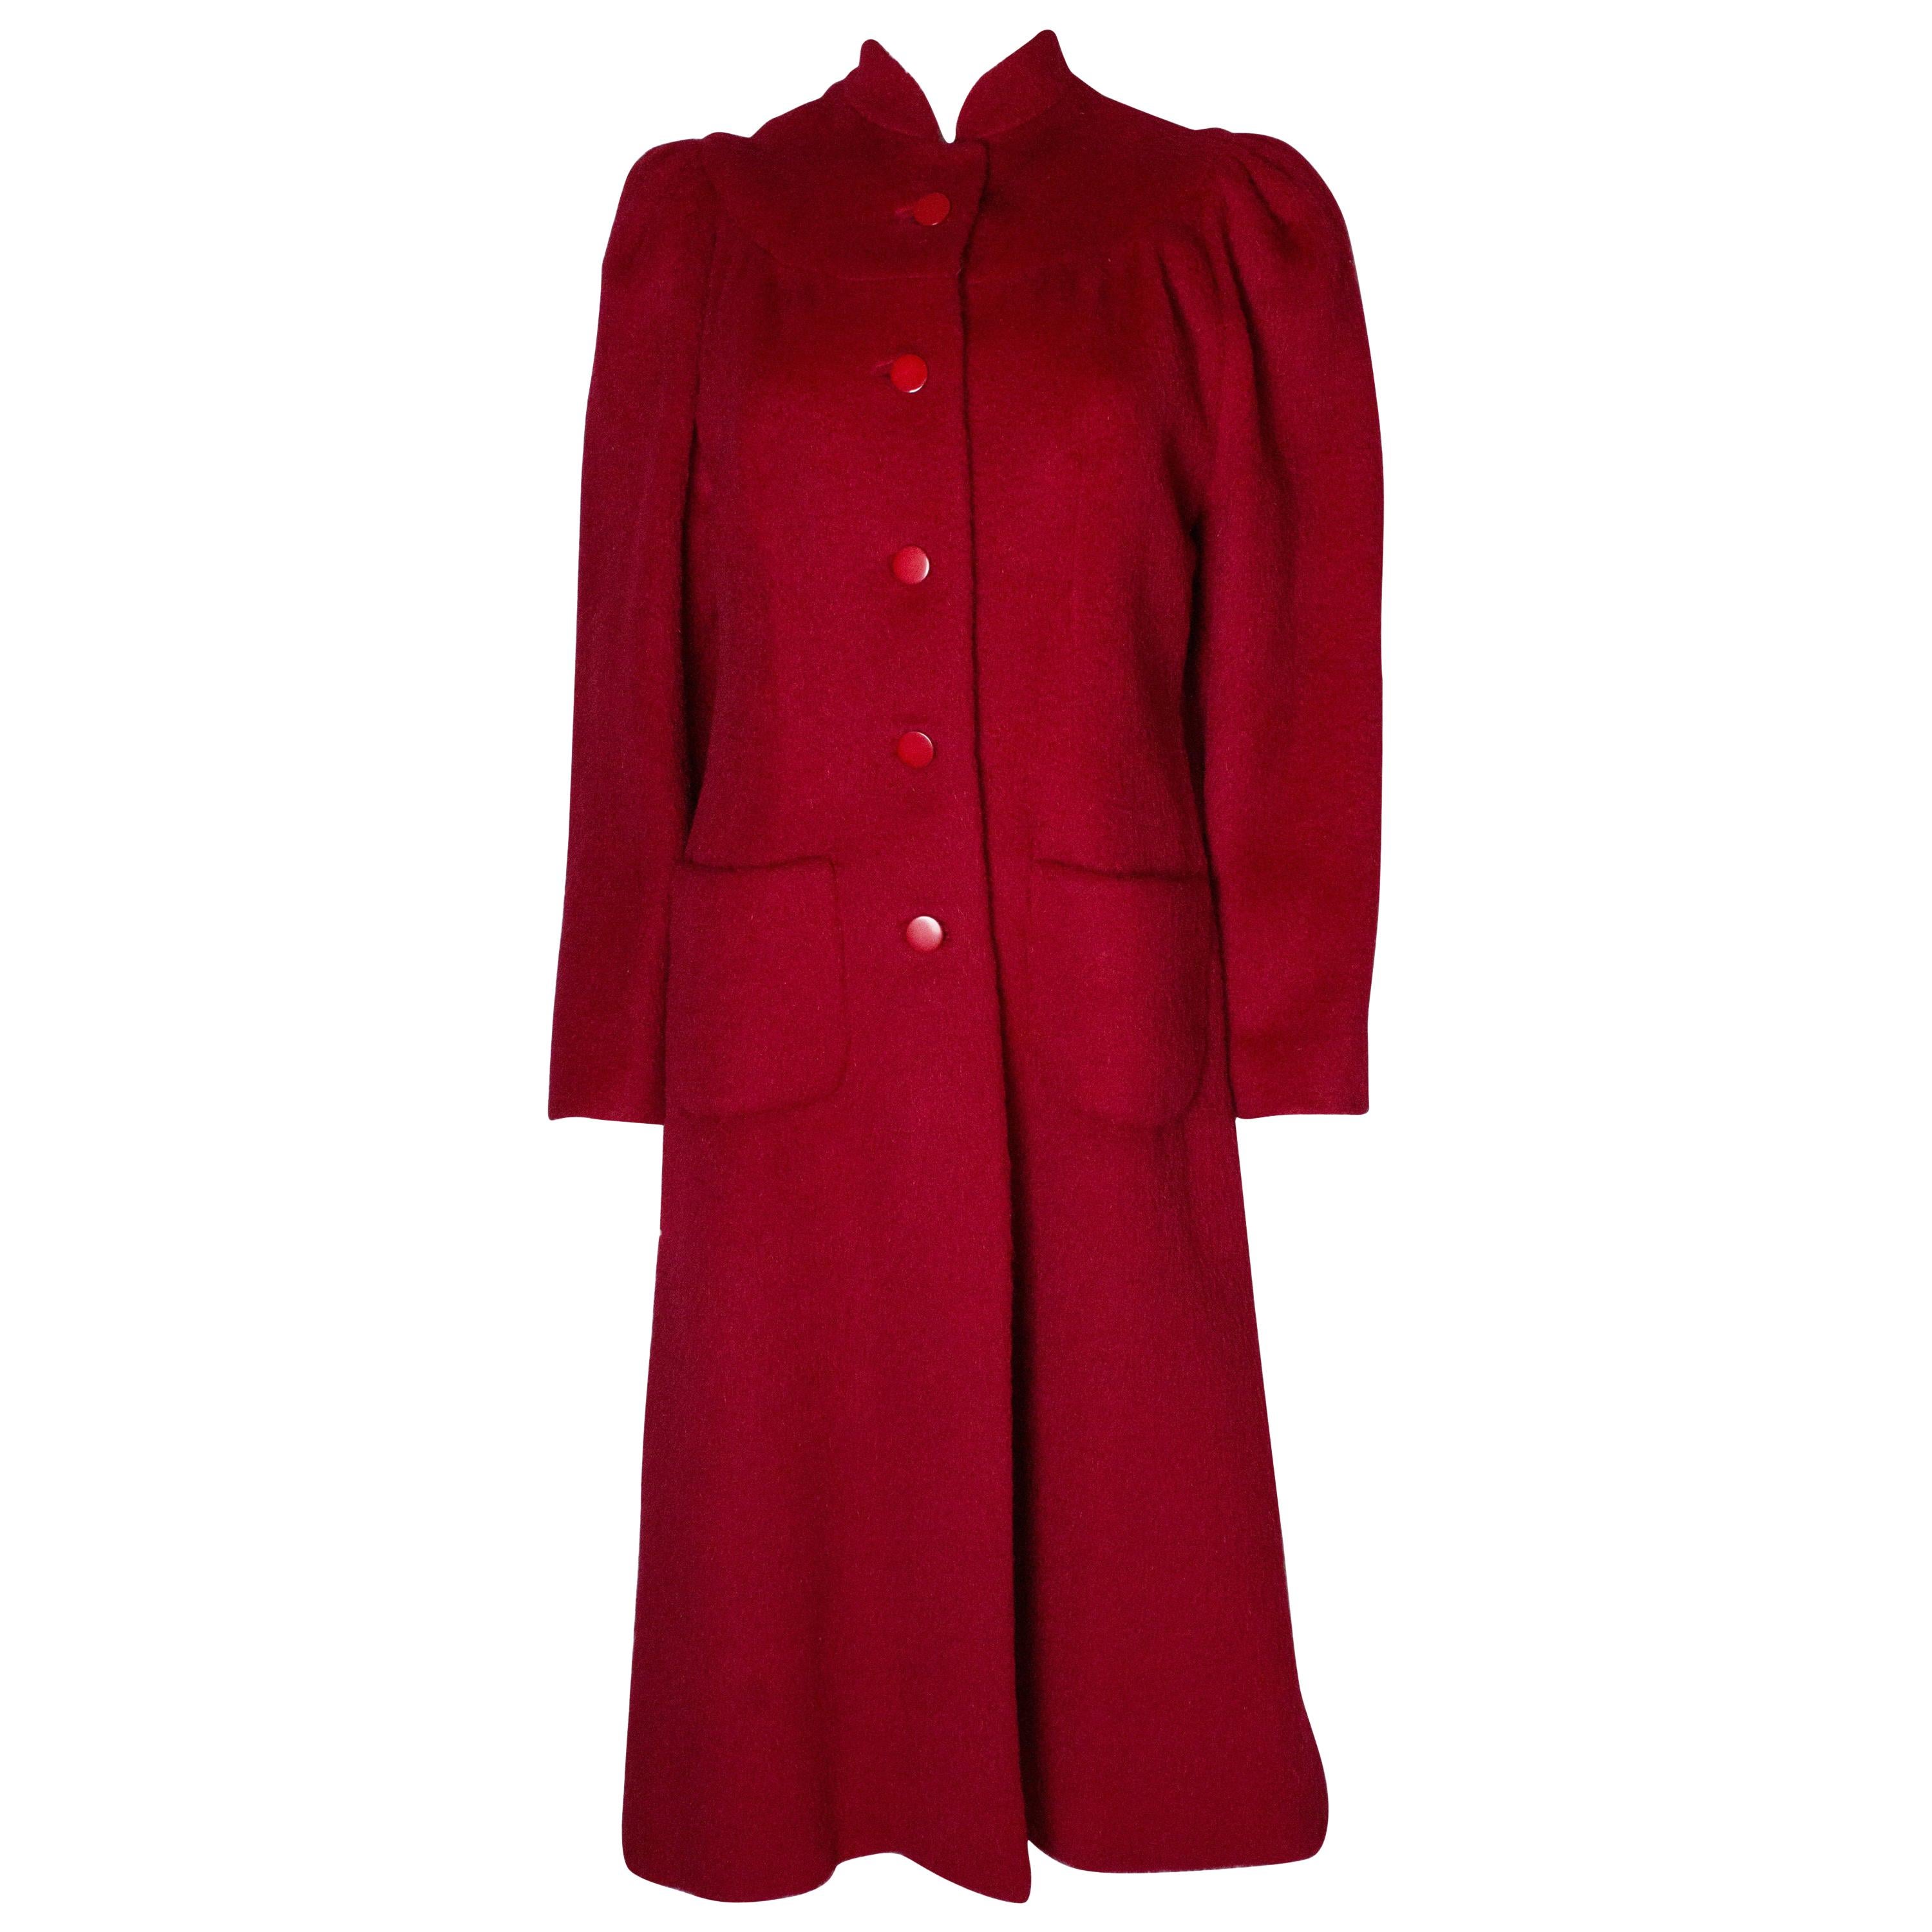 Donald Campbell - Manteau rouge vintage